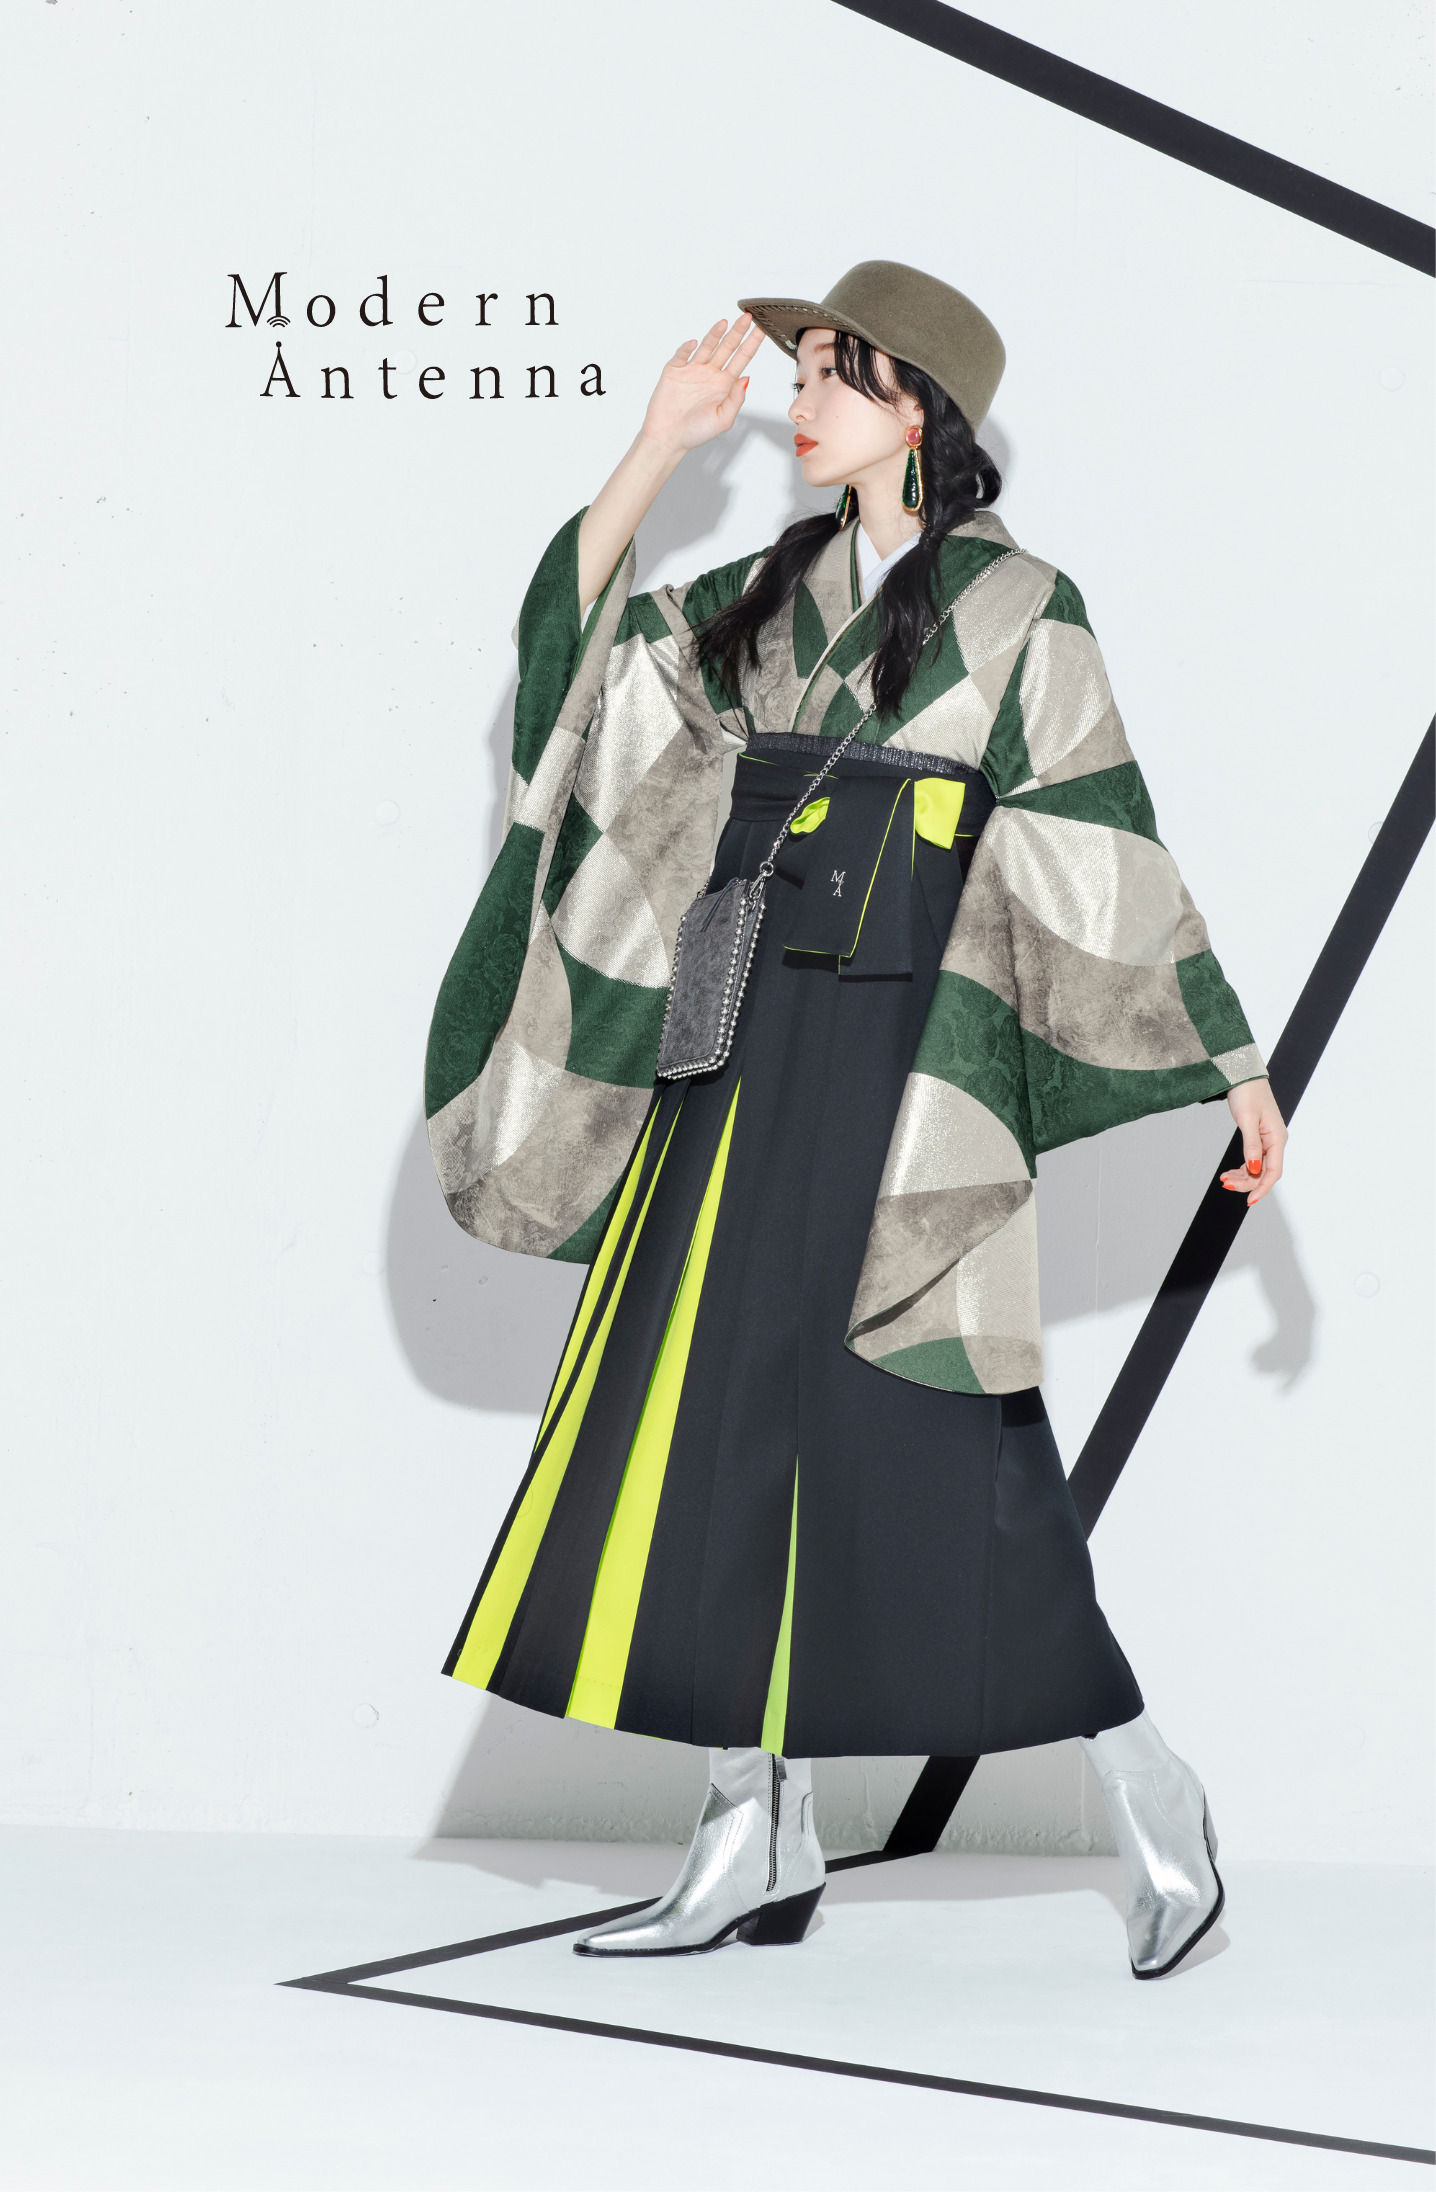 モダンアンテナ（Modern Antenna）ブランドの、緑の幾何学模様の二尺袖と、黒と黄色の袴の女性用卒業式袴を着用した全身写真